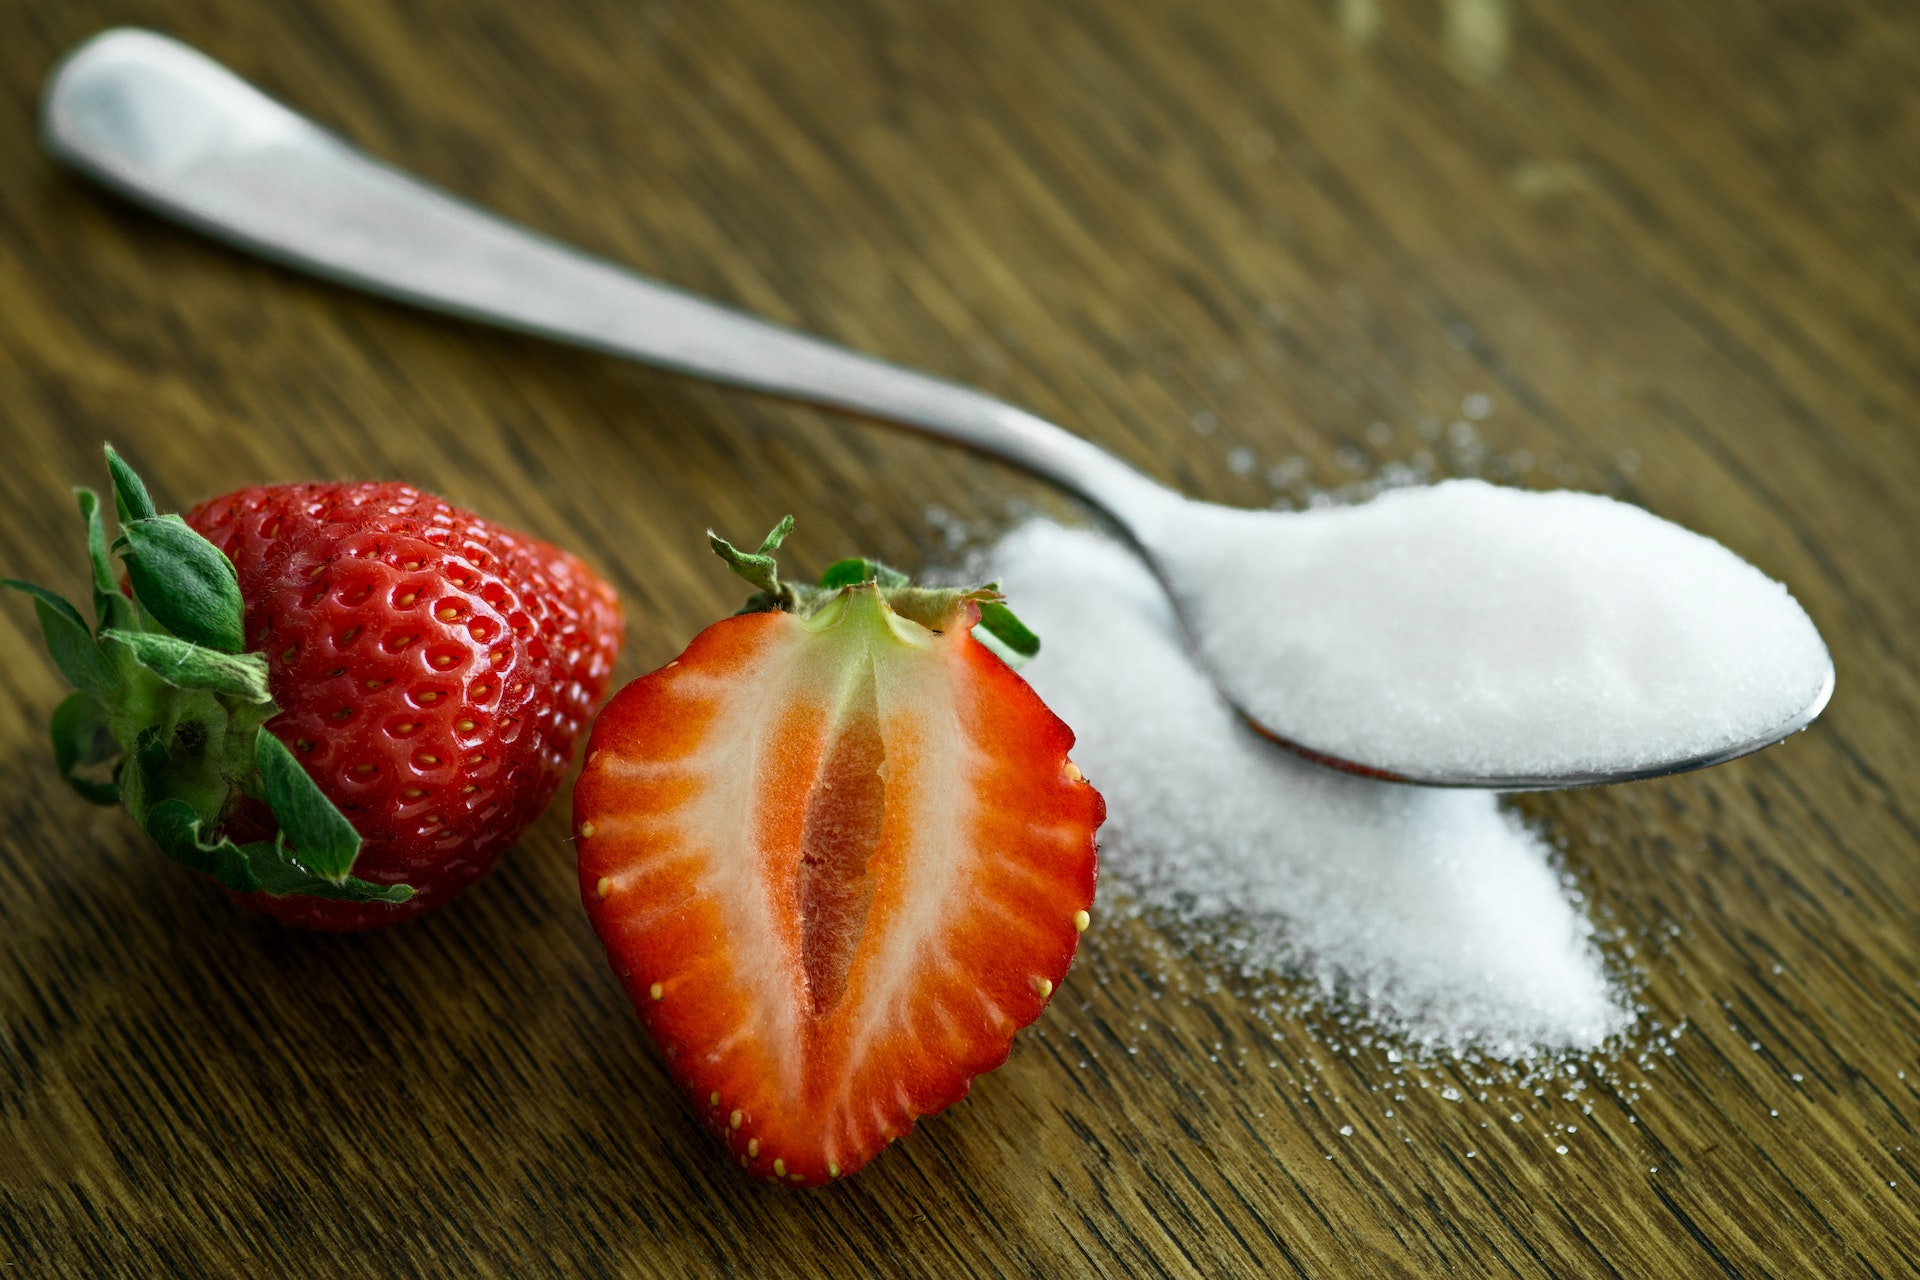 El azúcar se suele utilizar incluso en las barras proteicas o snacks saludables porque es necesaria para unir los componentes. Torr FoodTech busca alcanzar opciones más saludables para lograr esto. Foto: Mali Maeder/Pexels.